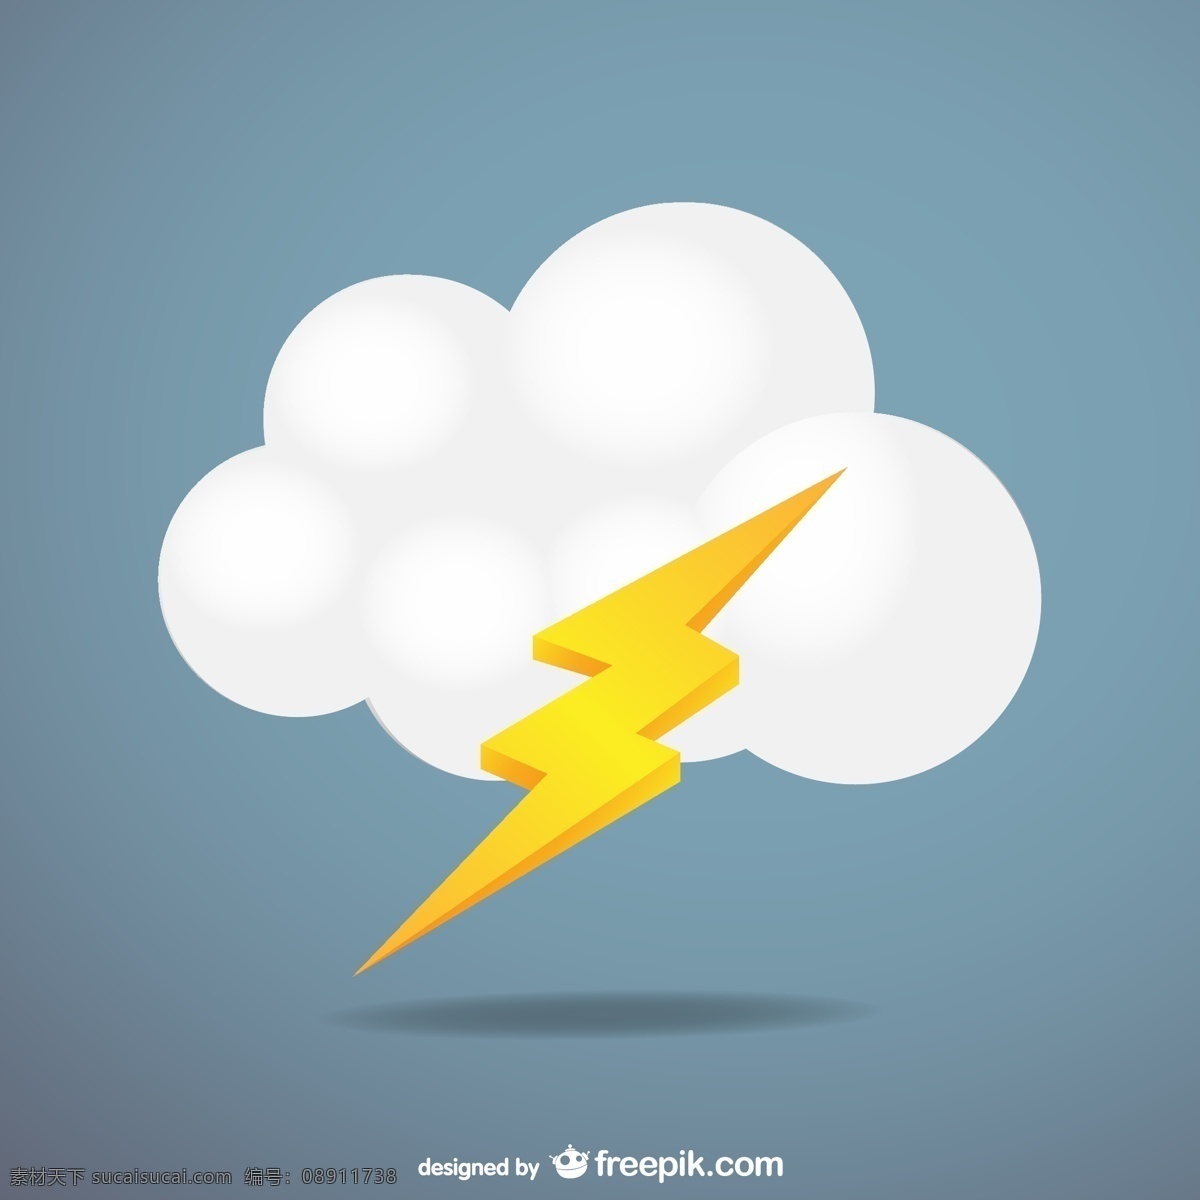 云闪电矢量 云 大自然 天空 模板 图形 标志 环境 雷电 插图 符号 冷 元素 风暴 图像 图形元素 天气 多云 预报 白色